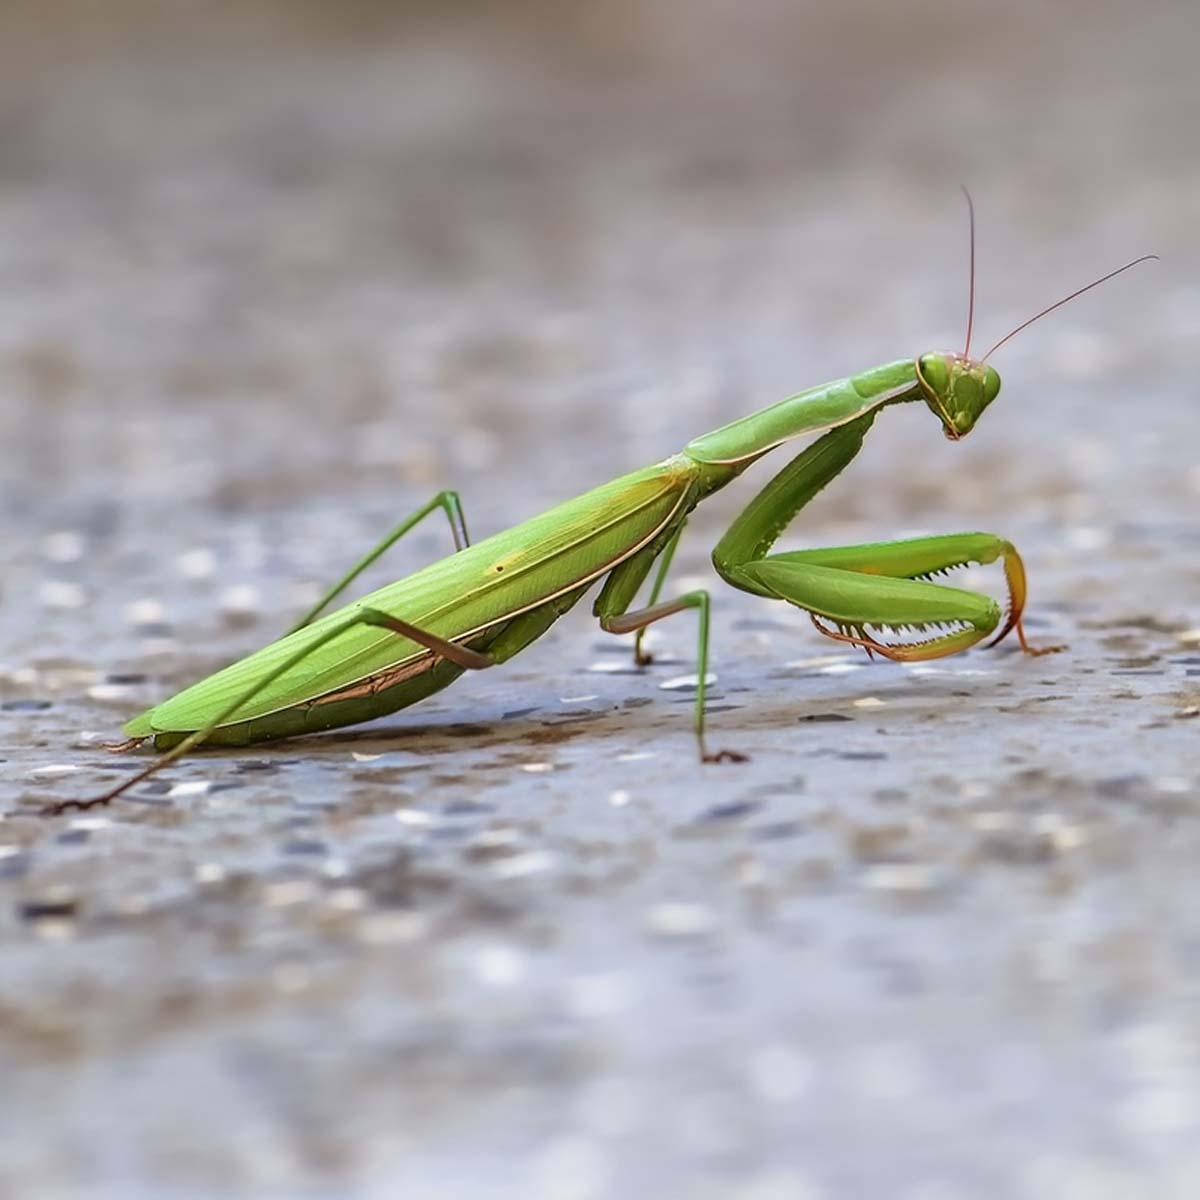 一只绿色螳螂